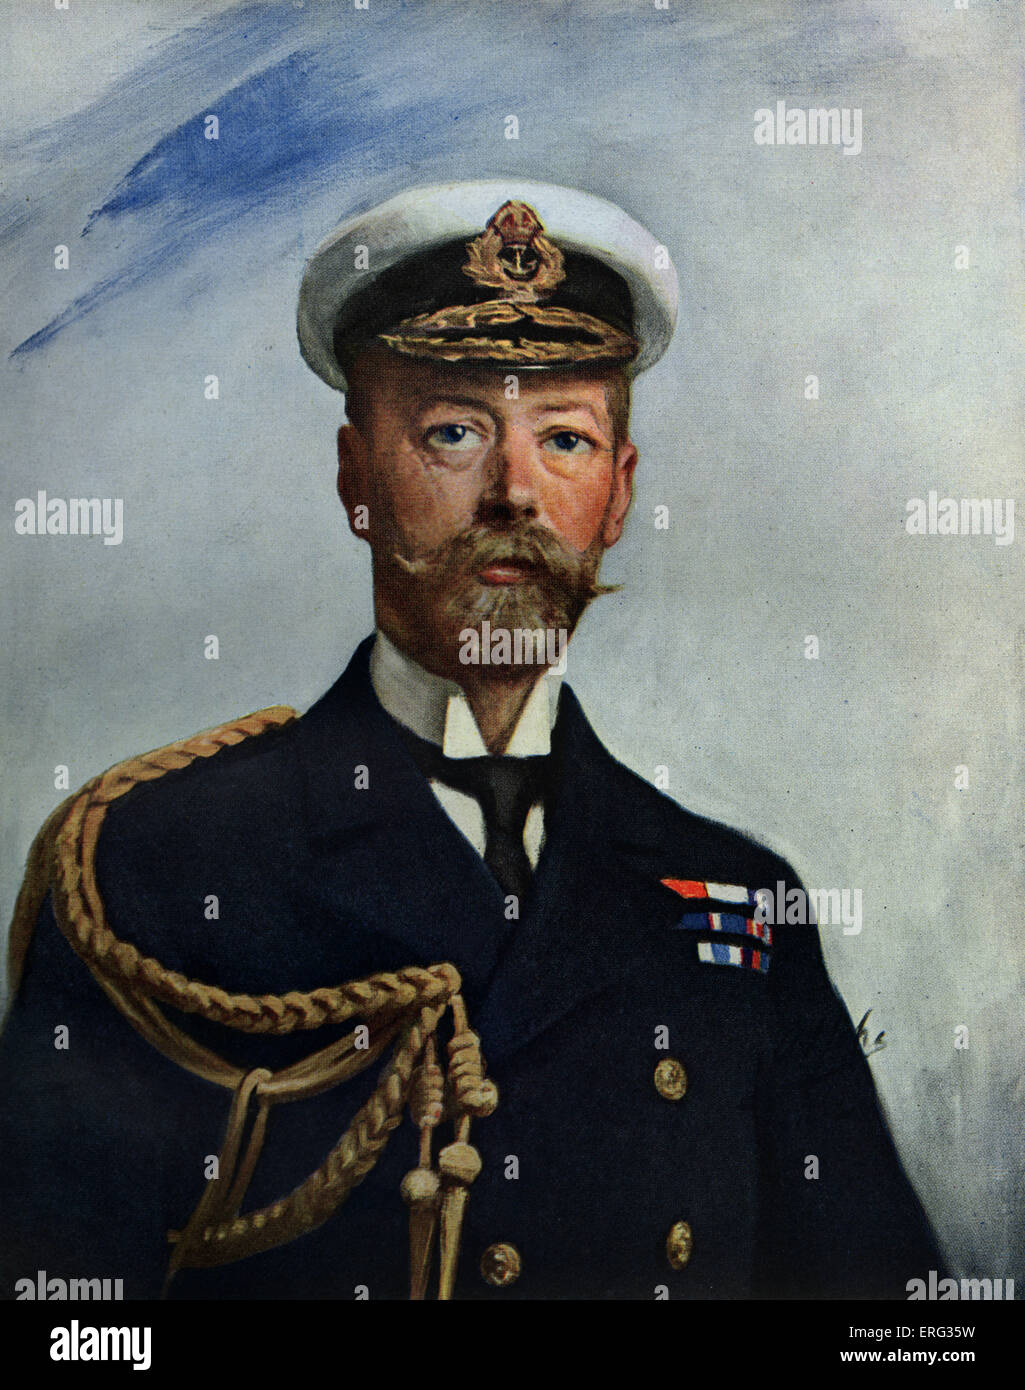 Le roi George V,copie du portrait par A. S. Cope, 1911. George V, monarque britannique, 3 juin 1865 - 20 janvier 1936. A jugé Banque D'Images